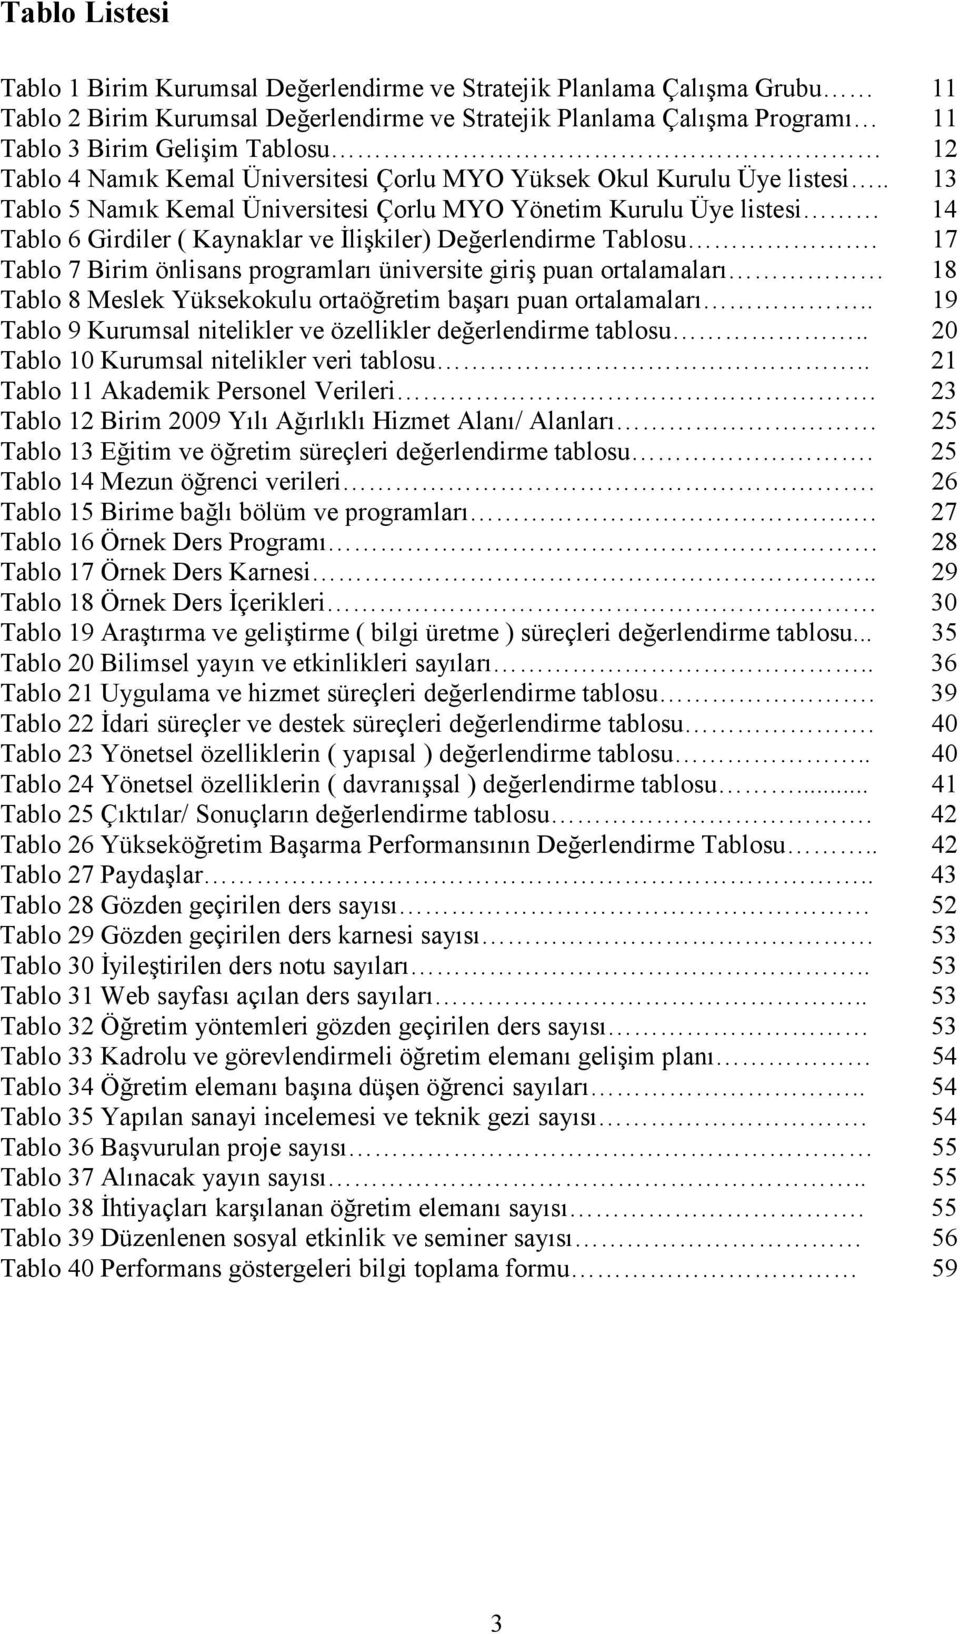 . 13 Tablo 5 Namık Kemal Üniversitesi Çorlu MYO Yönetim Kurulu Üye listesi 14 Tablo 6 Girdiler ( Kaynaklar ve Đlişkiler) Değerlendirme Tablosu.